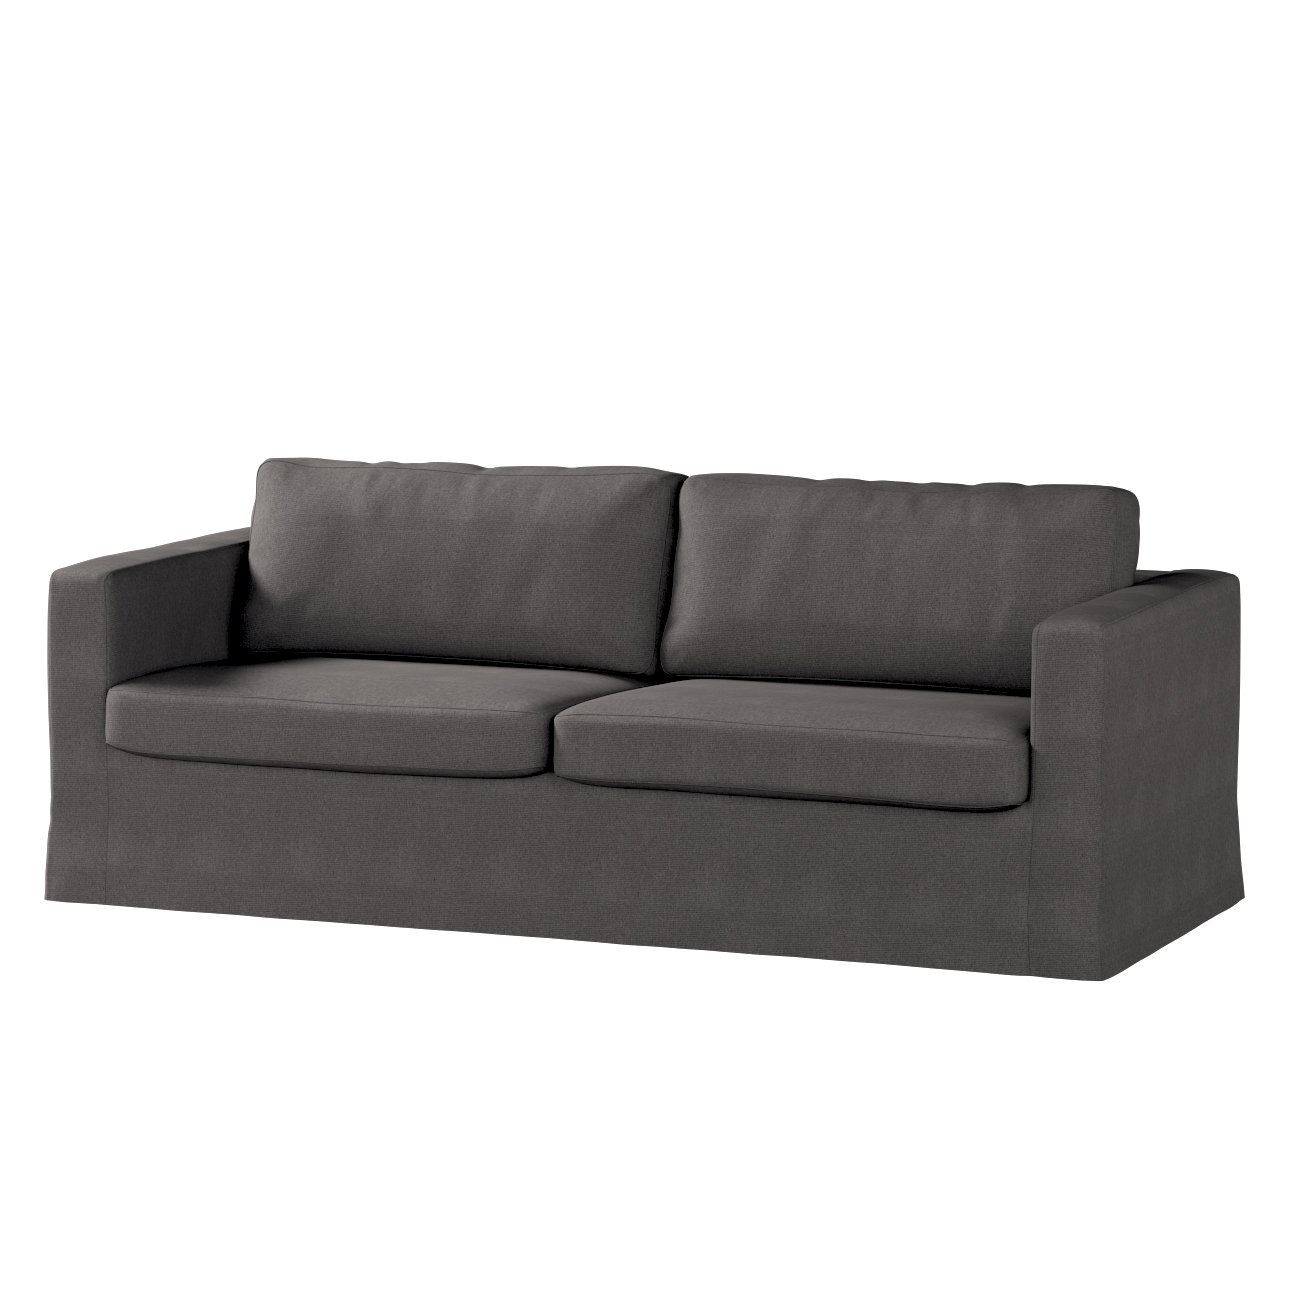 Bezug für Karlstad 3-Sitzer Sofa nicht ausklappbar, lang, dunkelgrau, Bezug günstig online kaufen